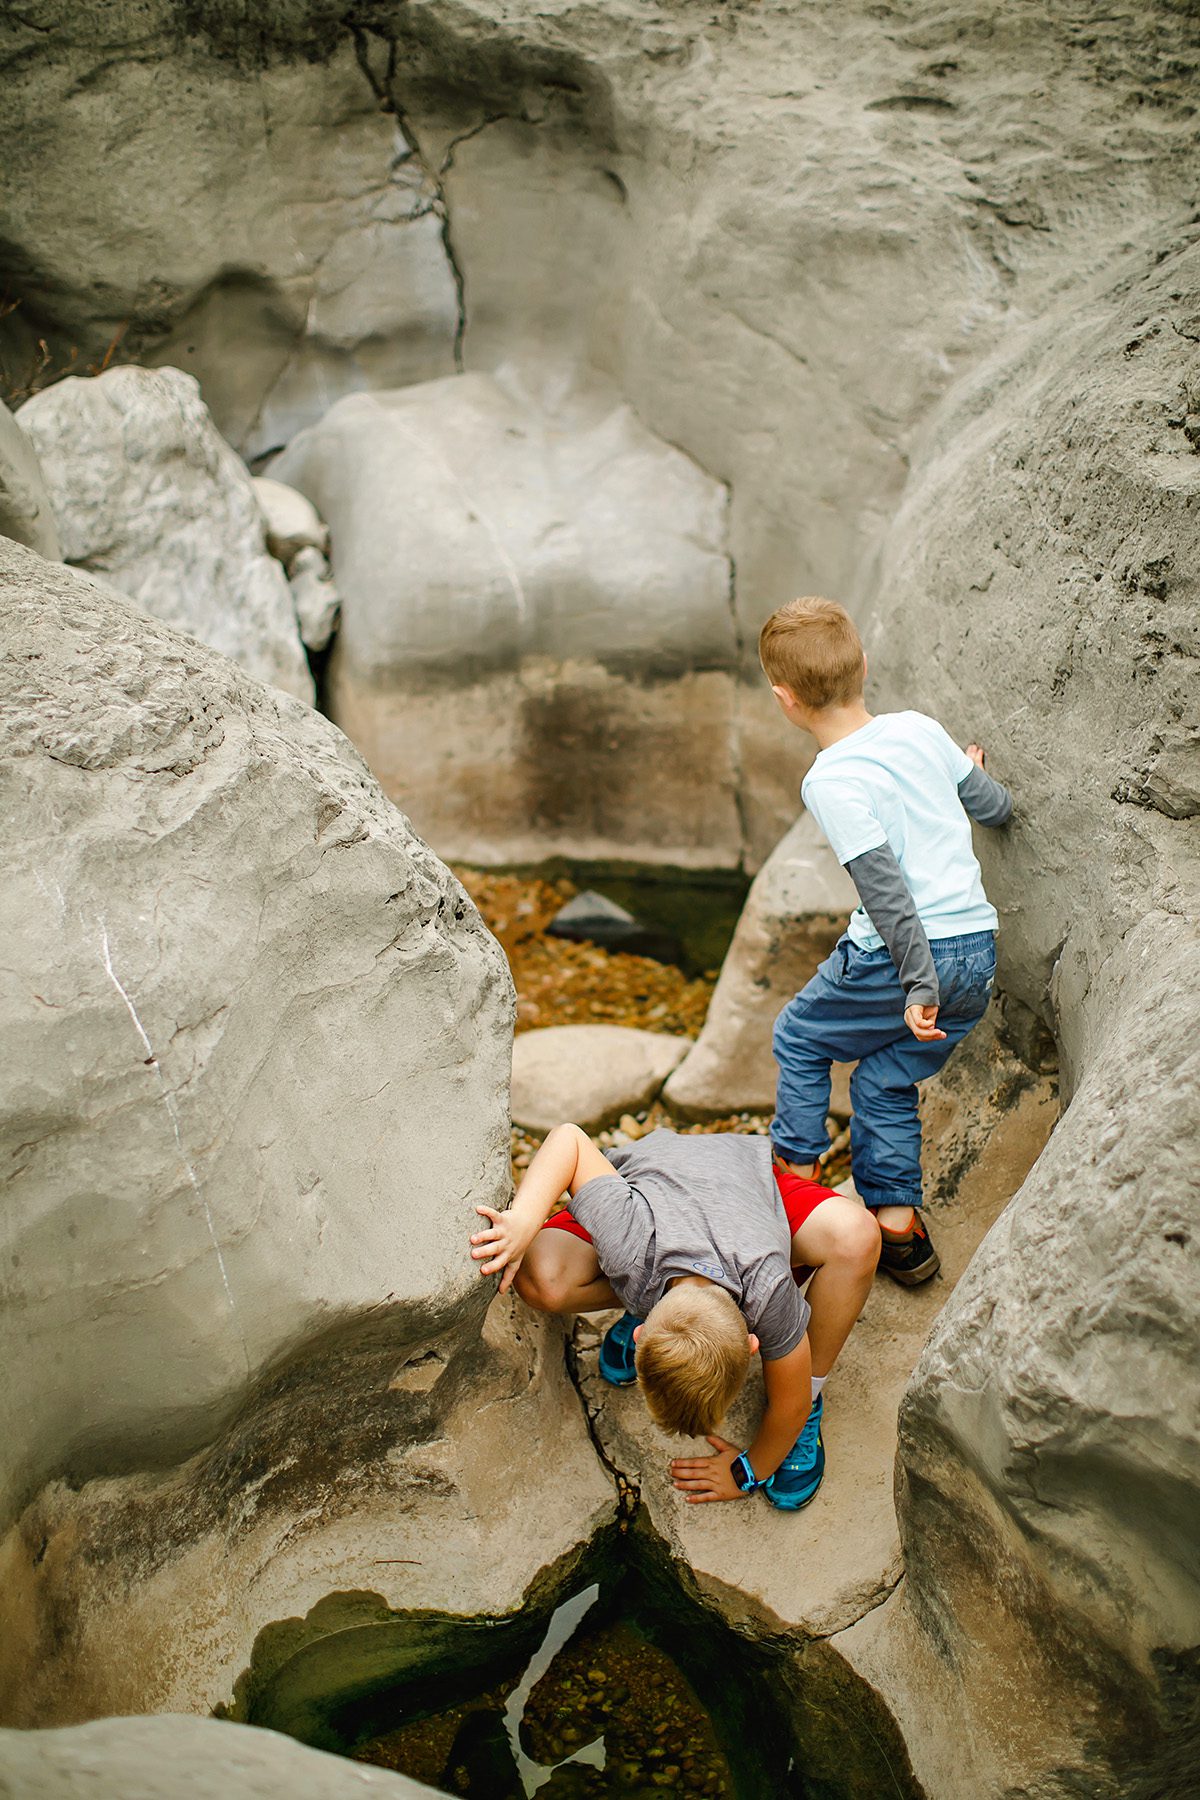 Kids exploring the Pedernals Falls limestone caverns